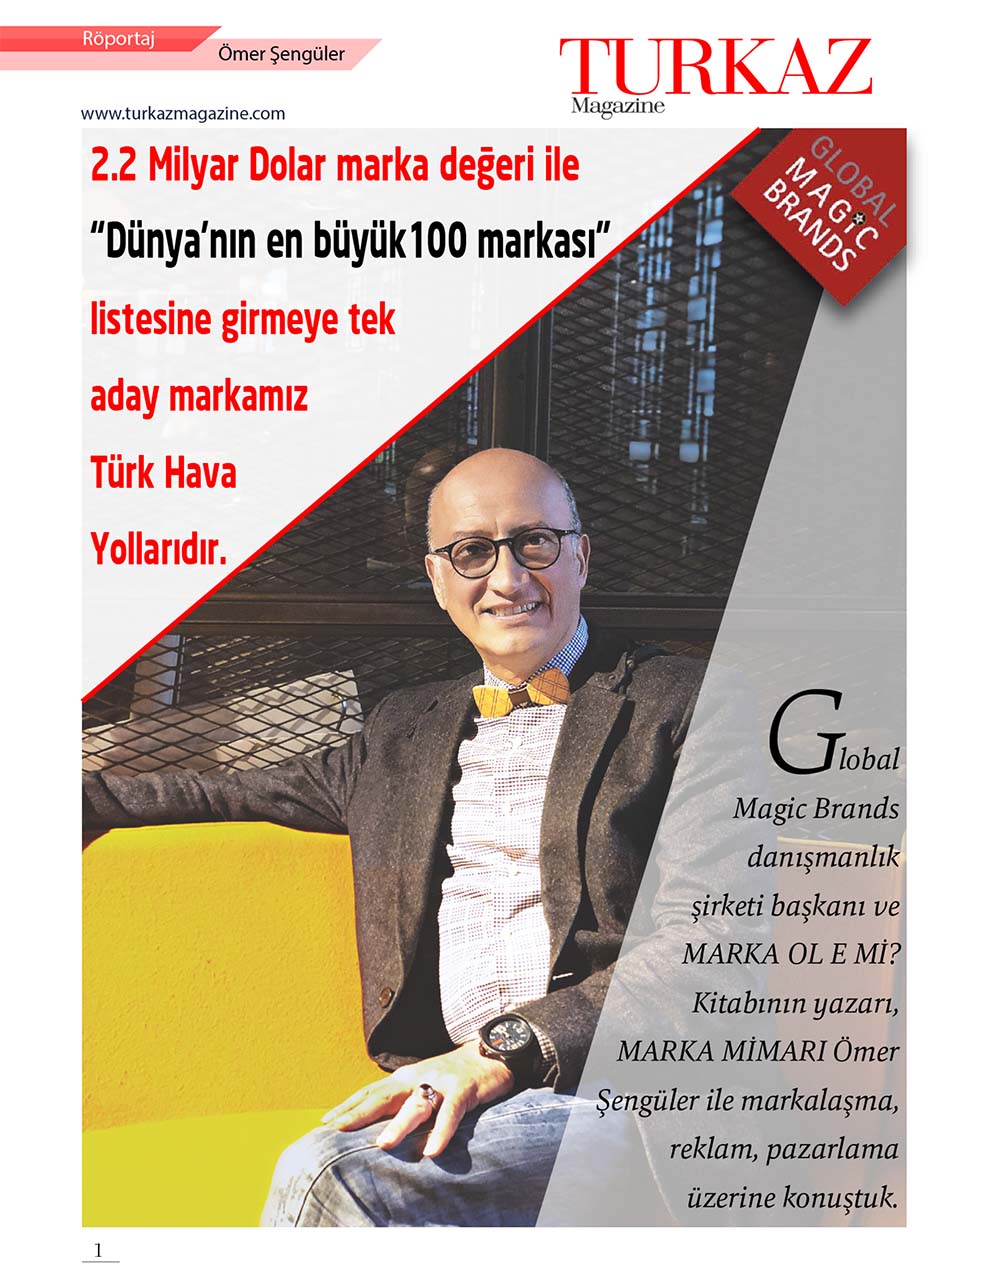 TURKAZMAGAZİN dergisi röportajı